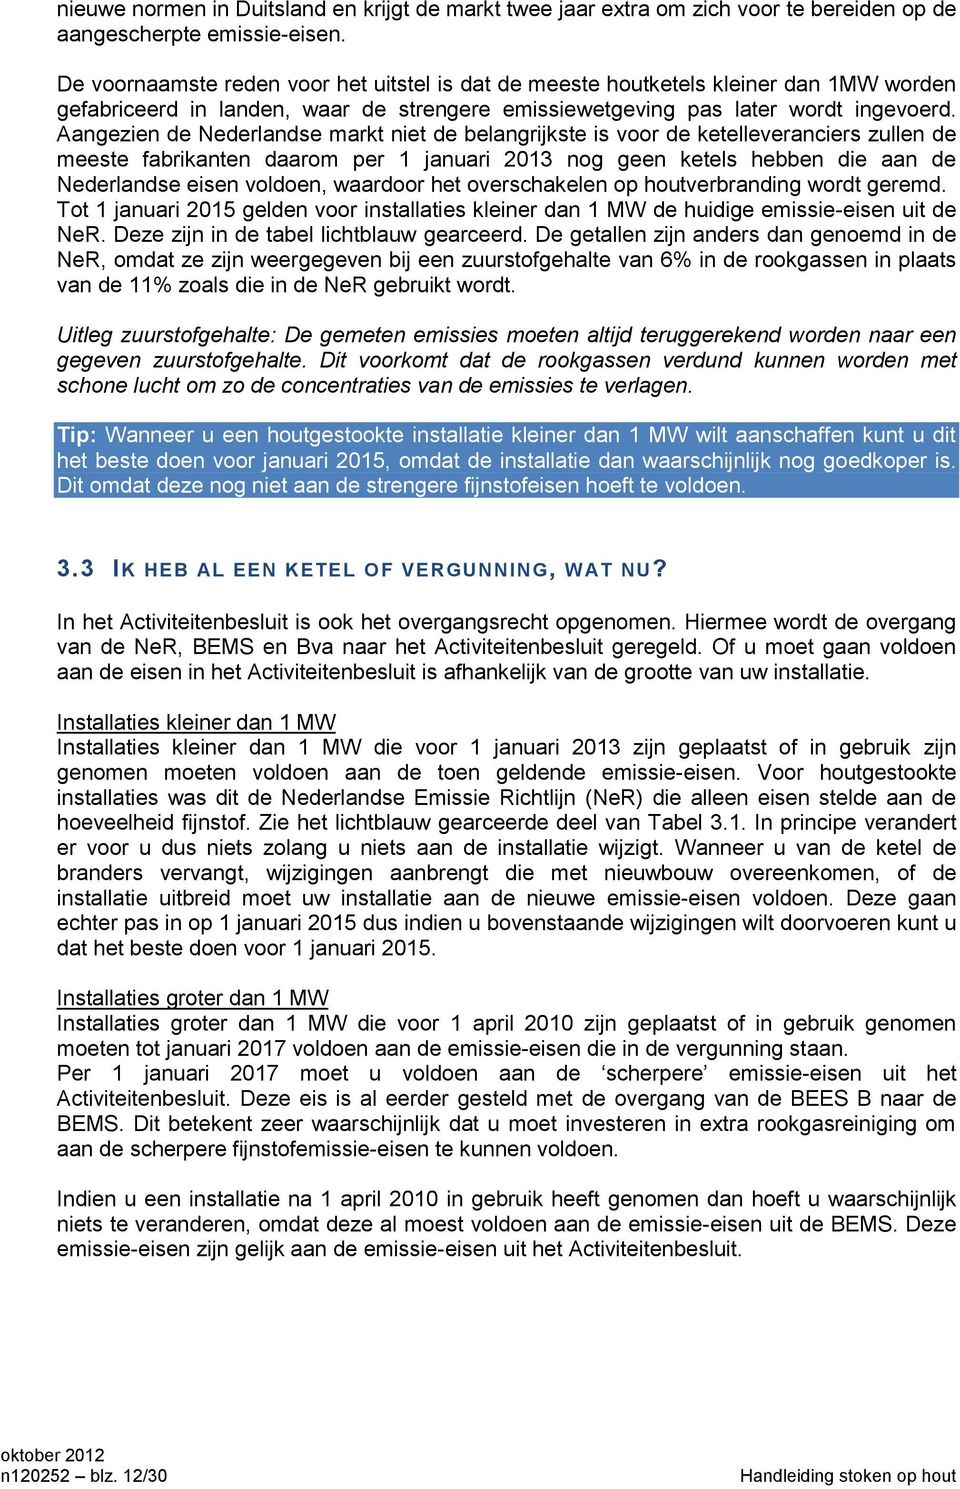 Aangezien de Nederlandse markt niet de belangrijkste is voor de ketelleveranciers zullen de meeste fabrikanten daarom per 1 januari 2013 nog geen ketels hebben die aan de Nederlandse eisen voldoen,